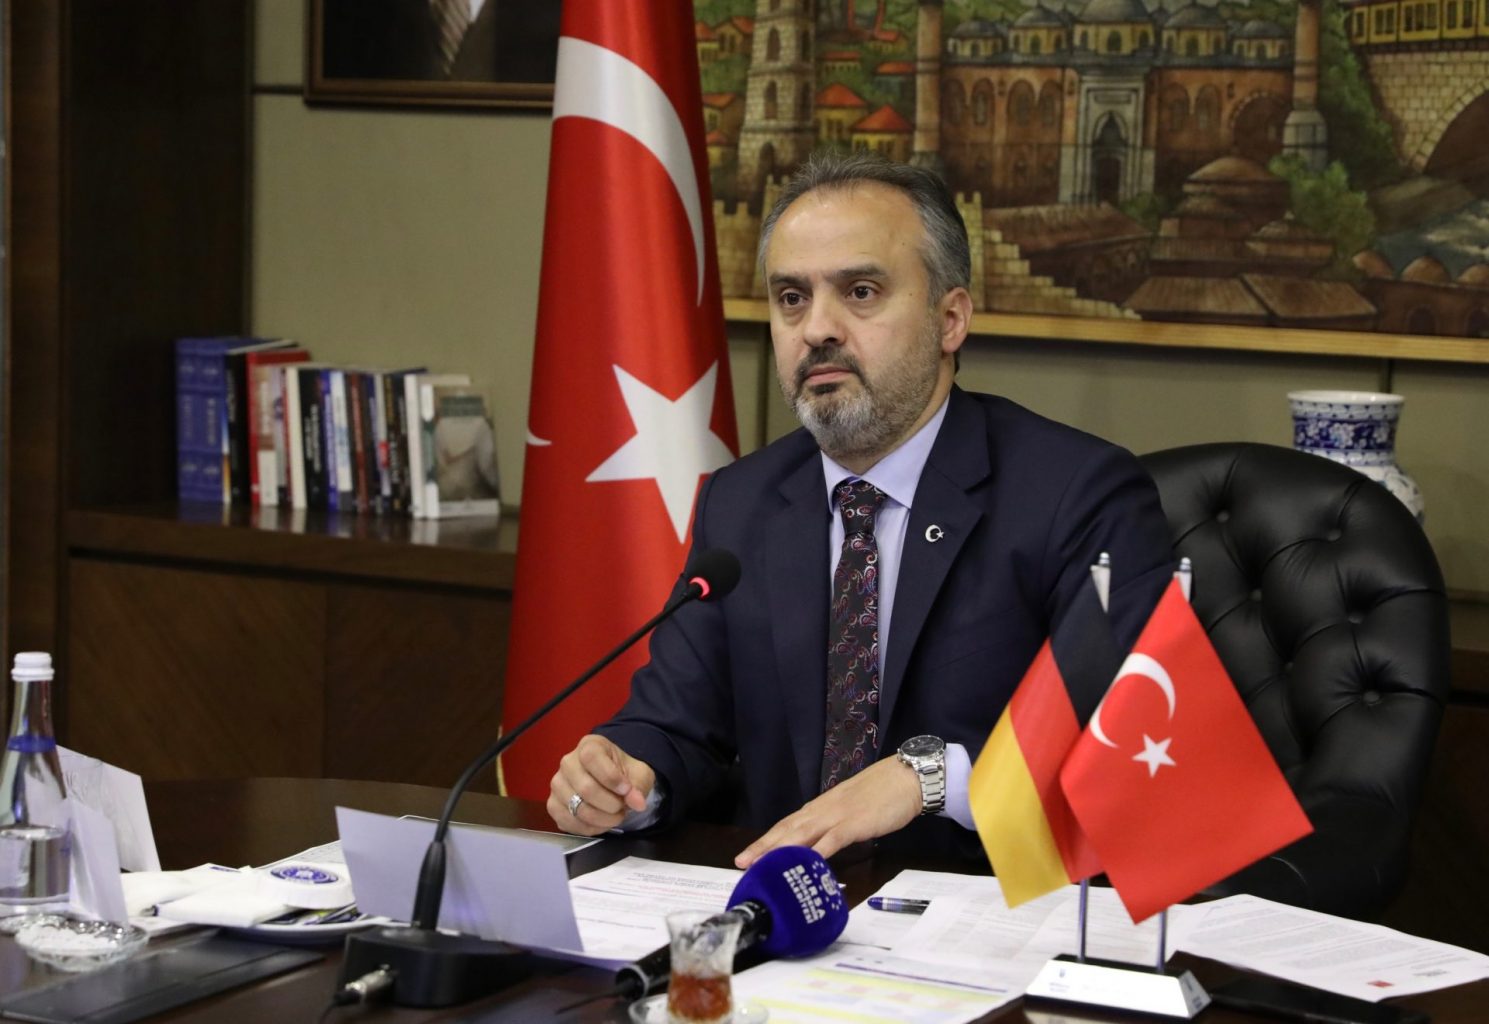 80 civarında kardeş şehir protokolü bulunan Türkiye ve Almanya’nın yerel yönetimleri arasındaki işbirliğini arttırmak amacıyla konferans düzenledi.